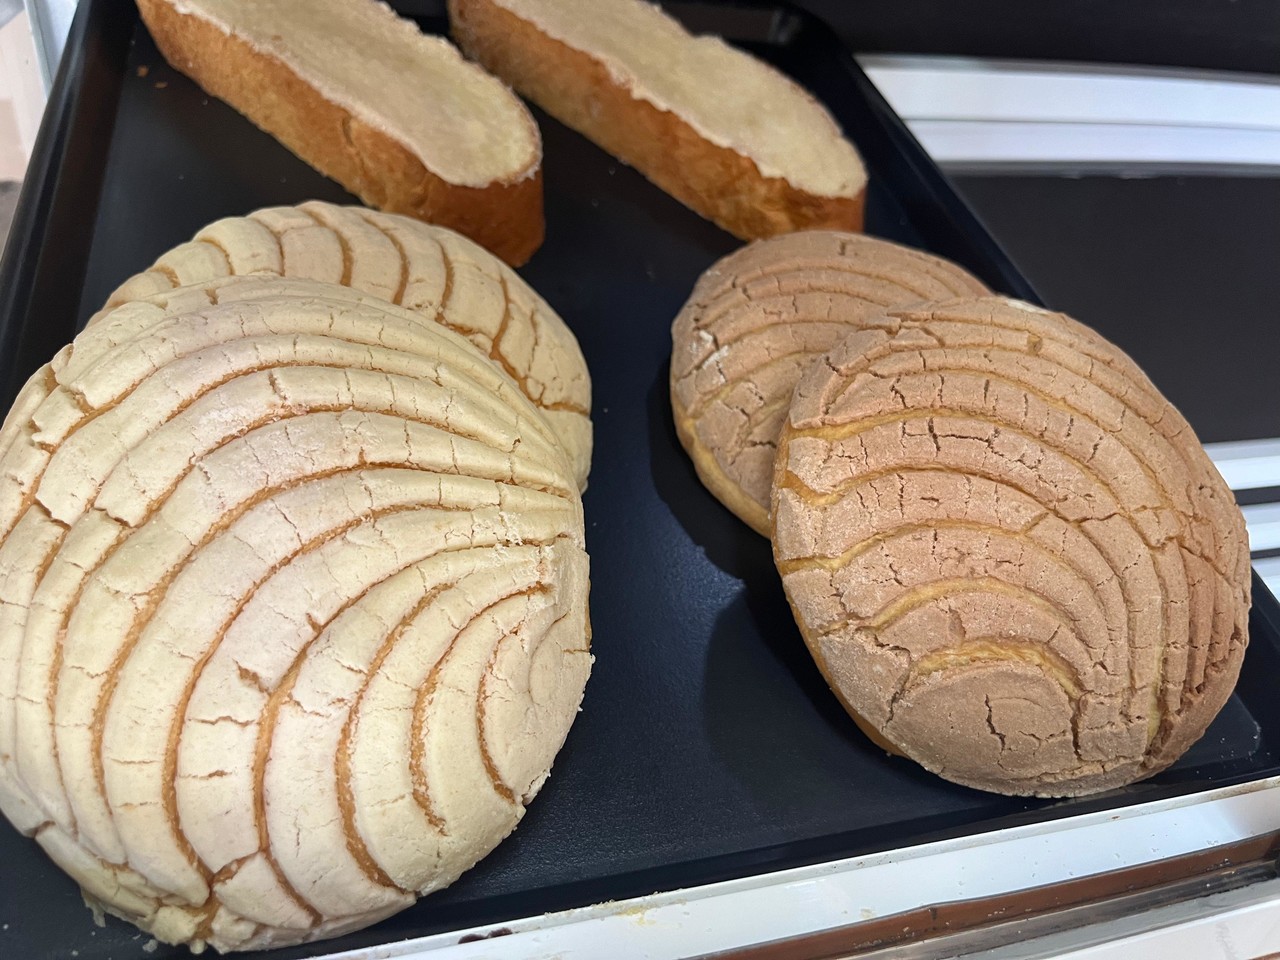 Los insumos para la elaboración del pan, se ha incrementado hasta en un 10 por ciento según informó la Canainpa. Foto: Isaura Retana.